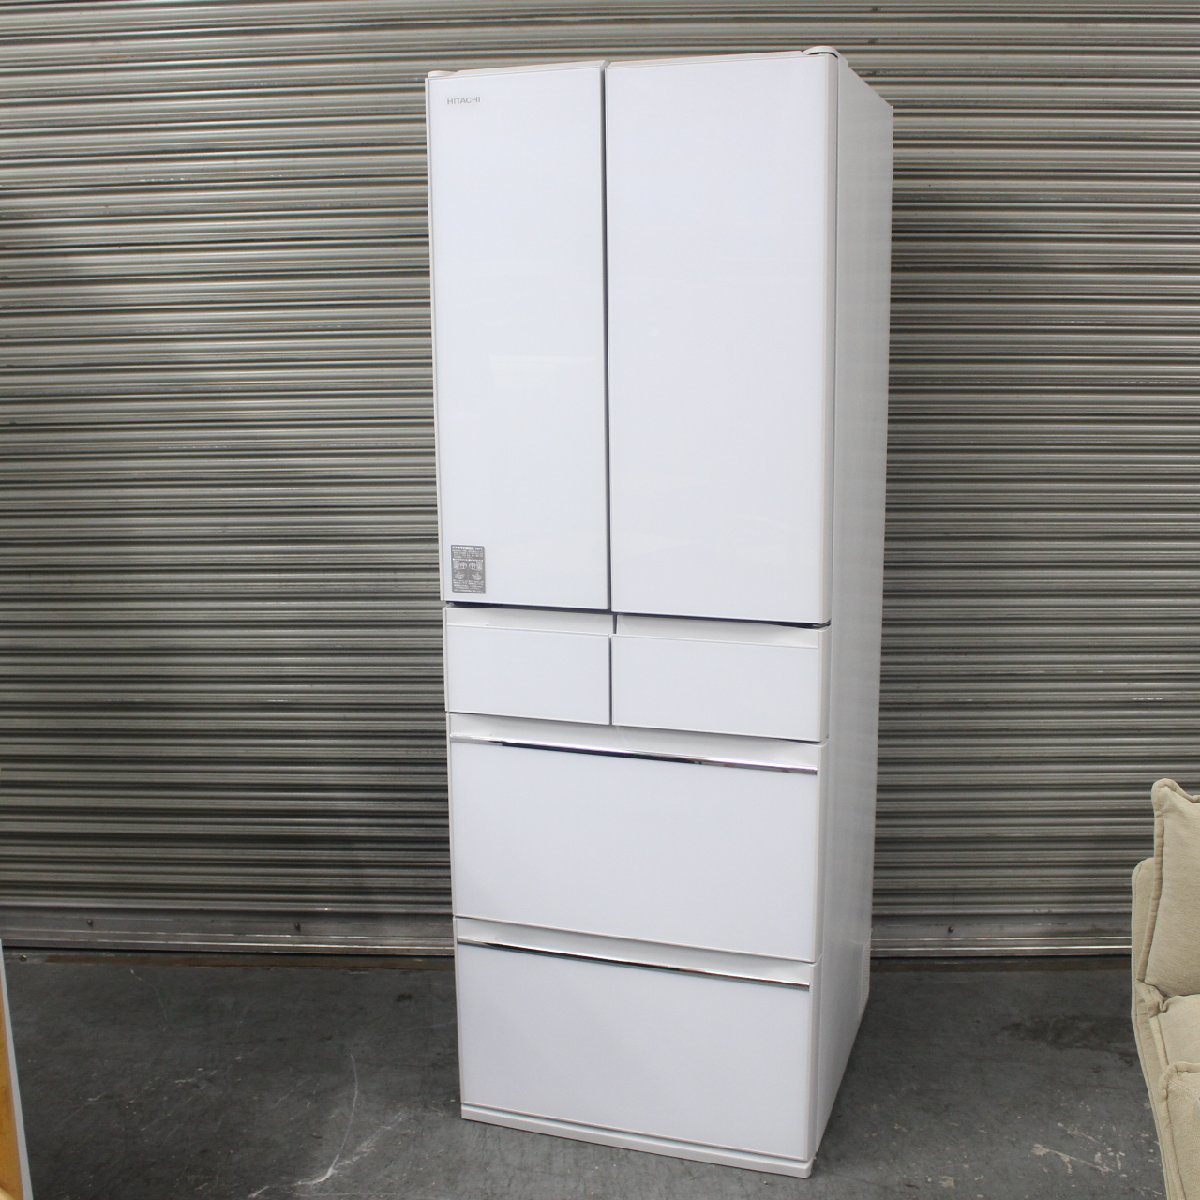 東京都三鷹市にて 日立 6ドア冷凍冷蔵庫 R-HW52J 2018年製 を出張買取させて頂きました。